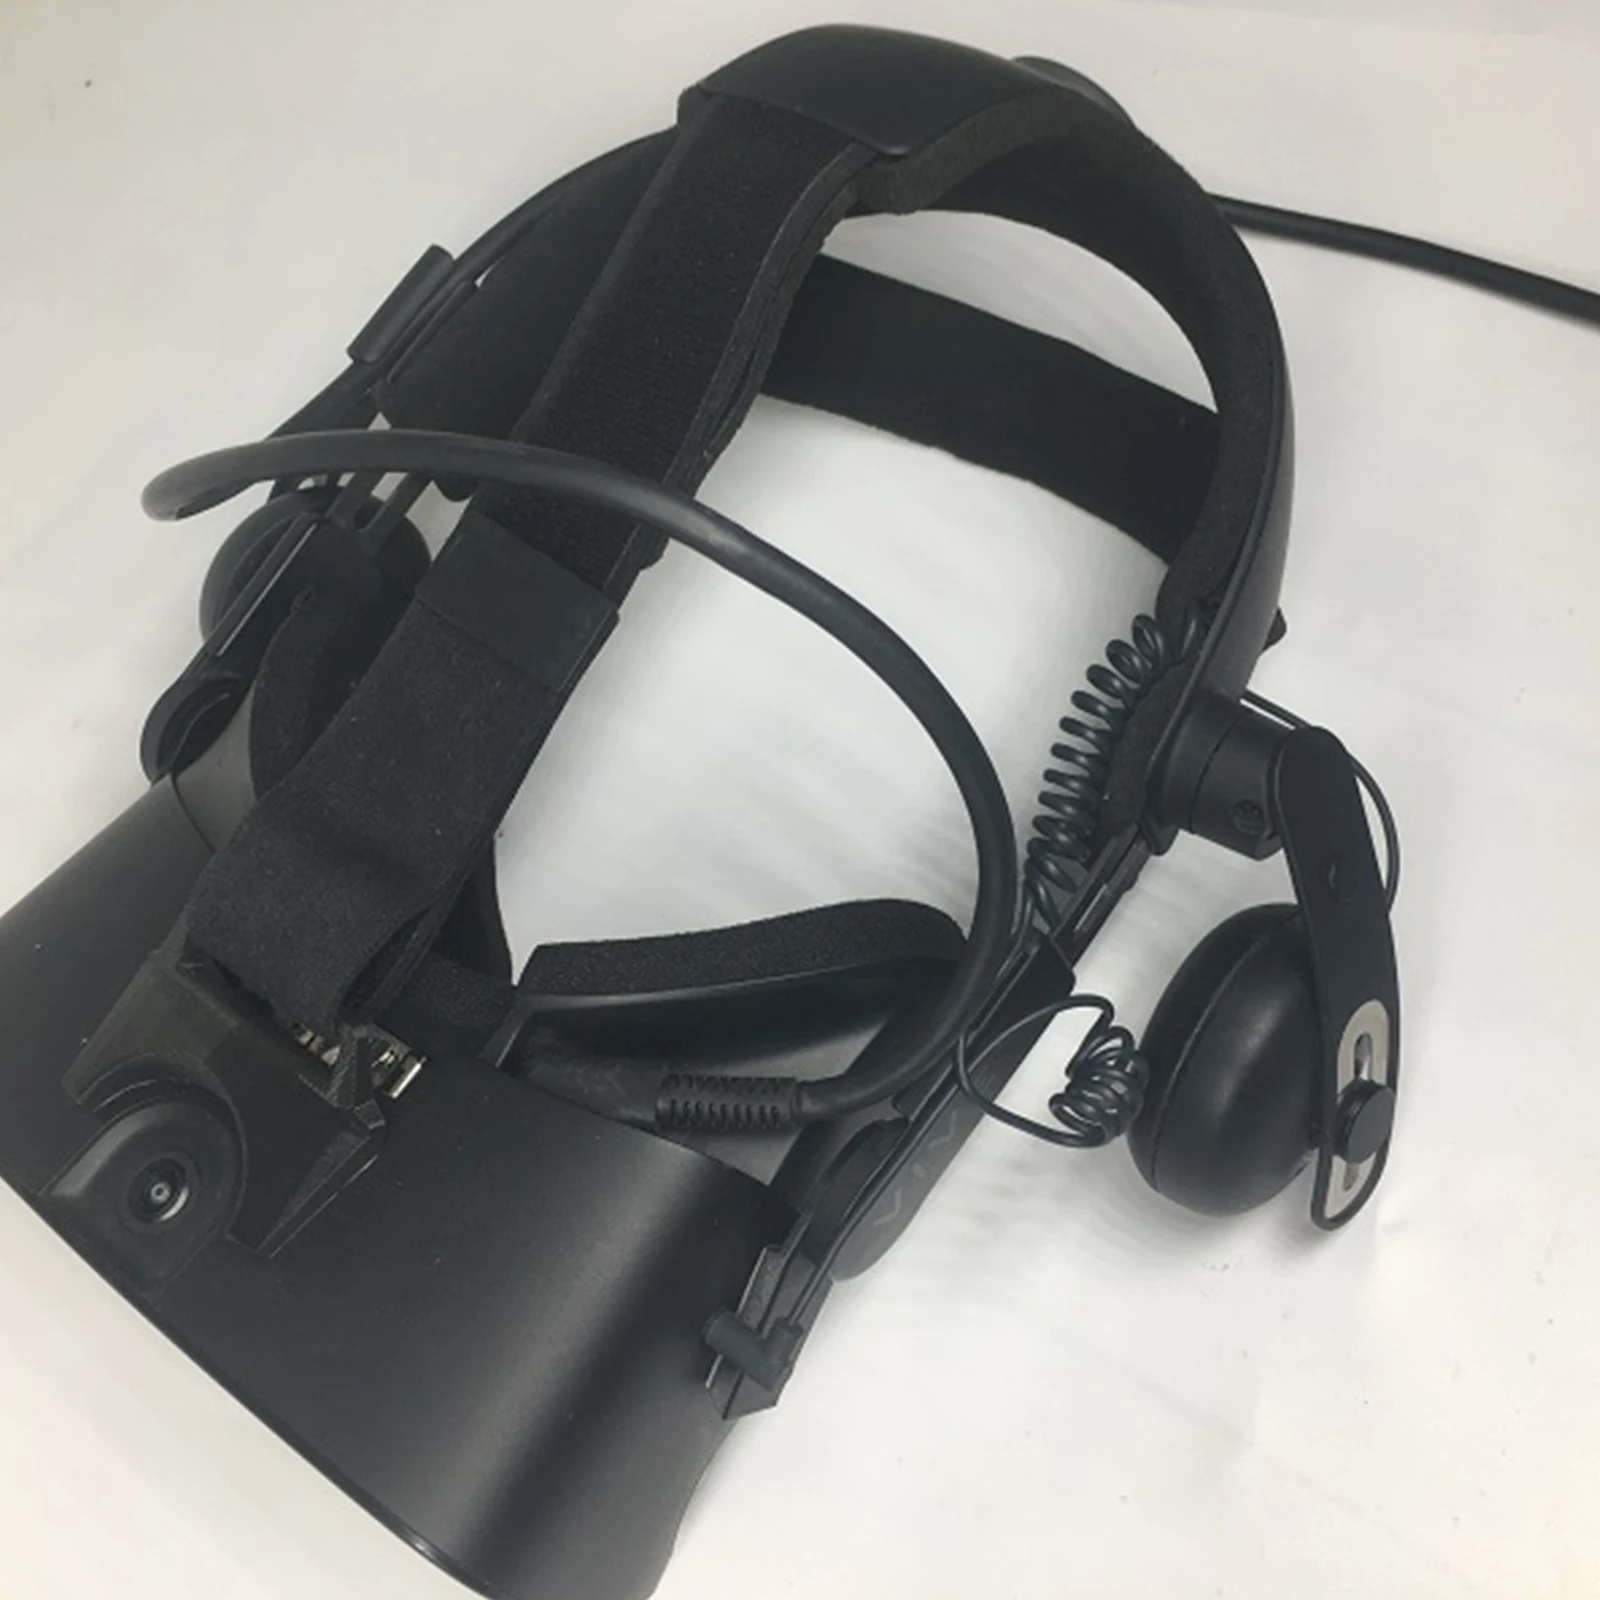 costo algas marinas Gracias por tu ayuda Adaptador de diadema de liberación rápida para auriculares Oculus rif-s VR,  para Vive Deluxe, correa de Audio, adaptador de ajuste cómodo - AliExpress  Productos electrónicos